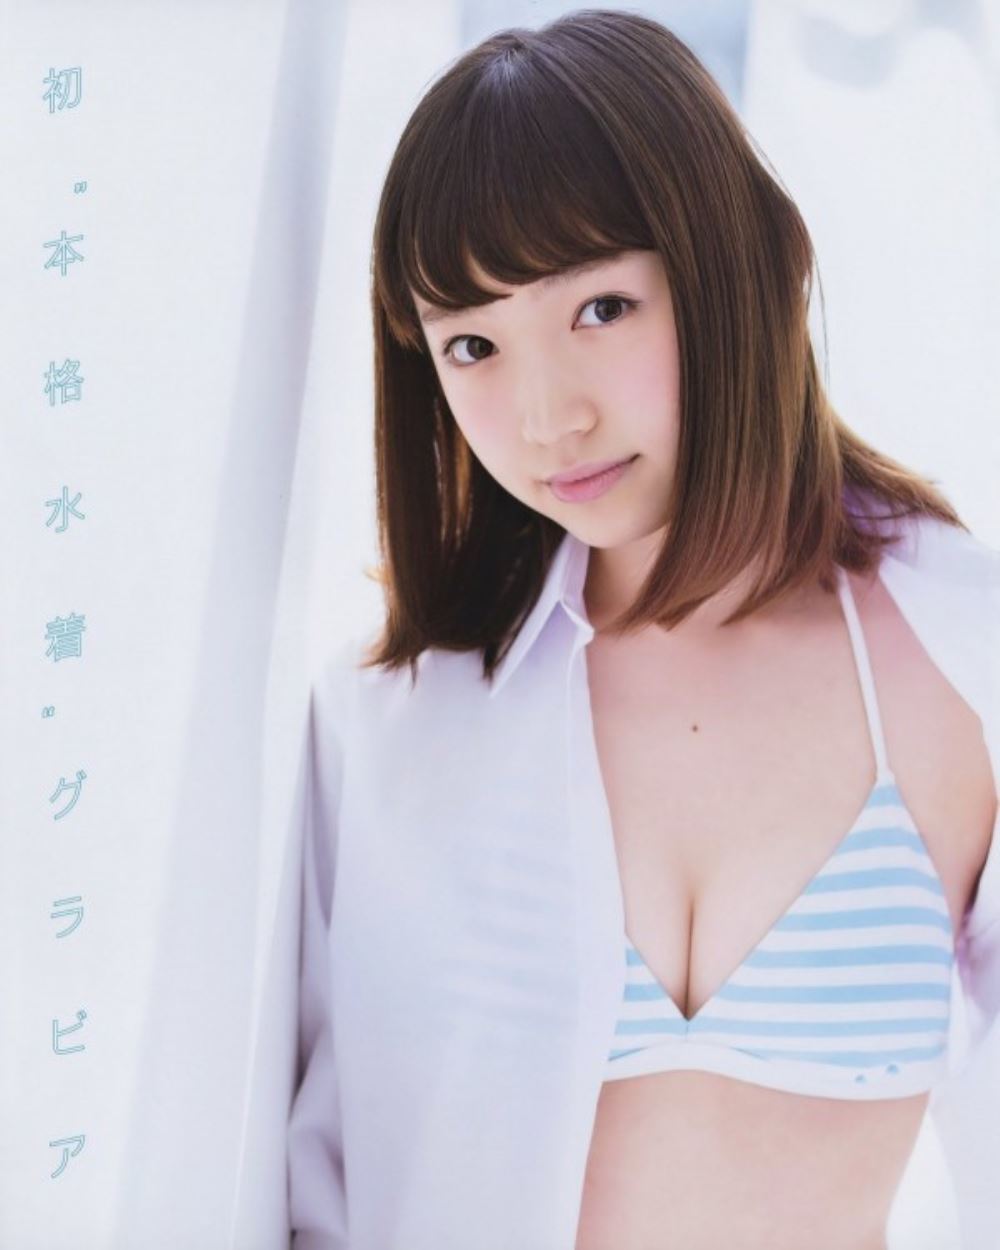 太田夢莉 1万年に1人 可愛い アイドル 水着 画像 14